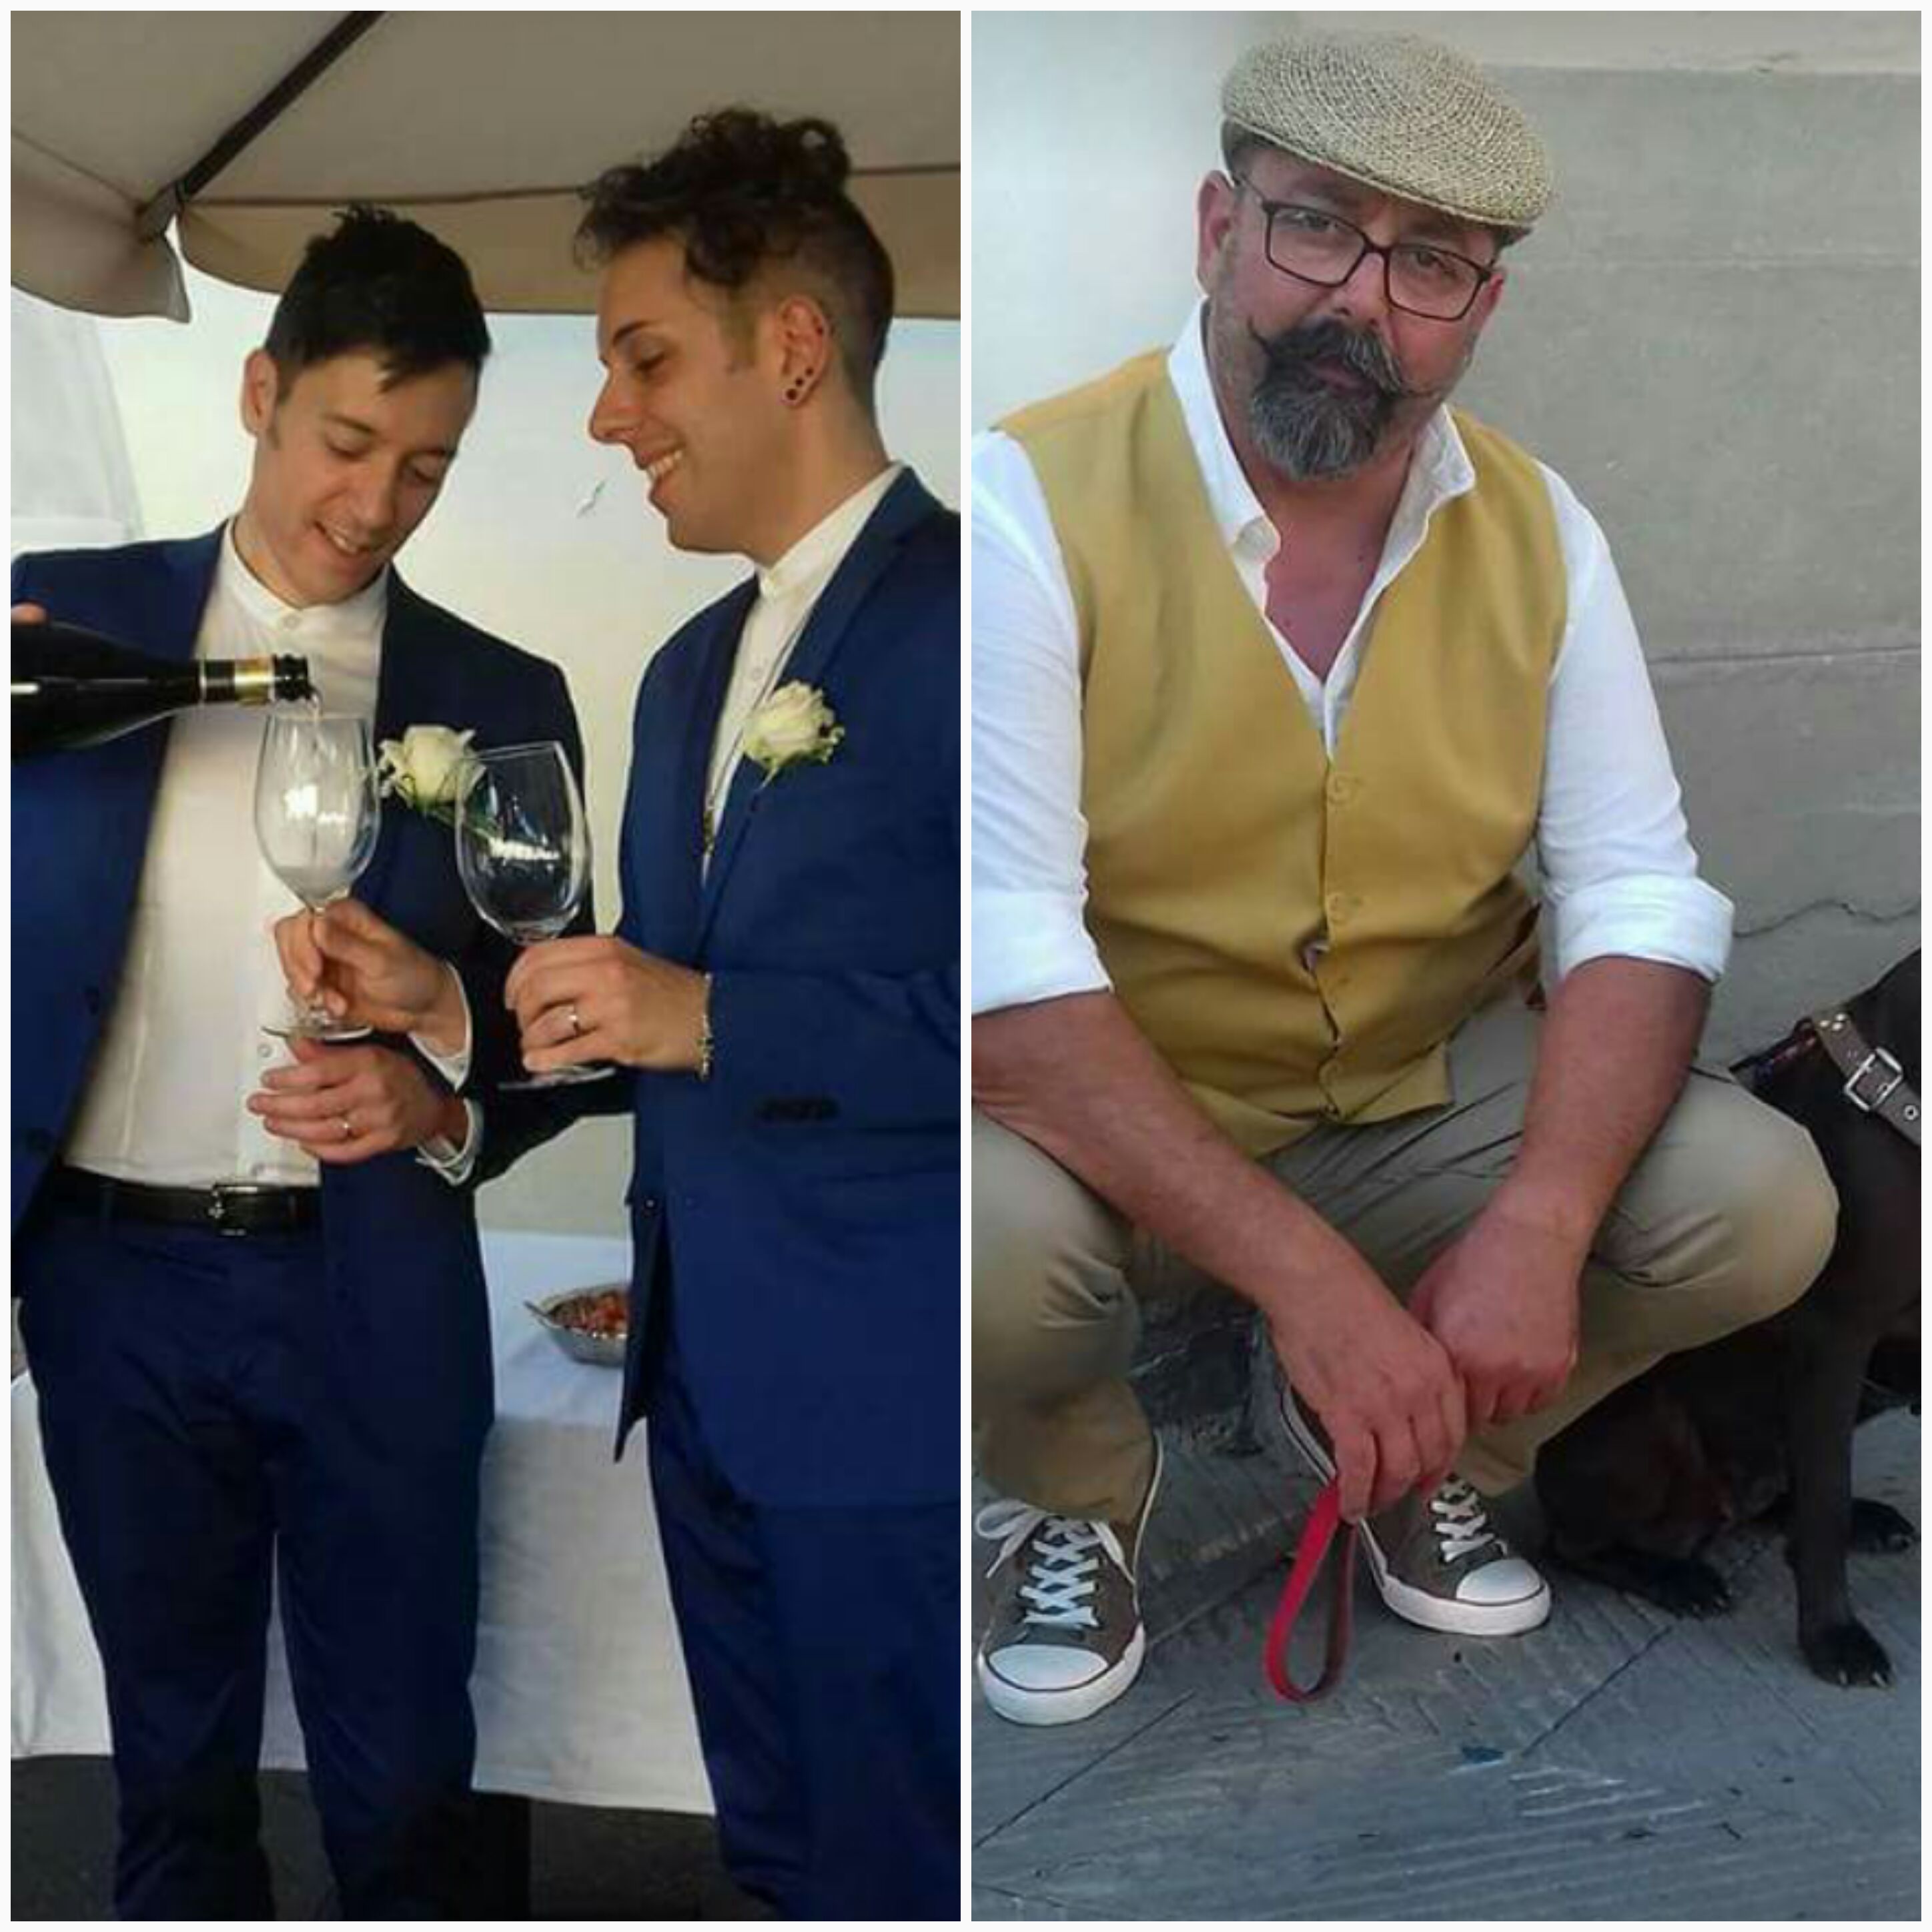 Matrimonio gay a Pontassieve. Gaffe (e figuraccia) con il padre dello sposo